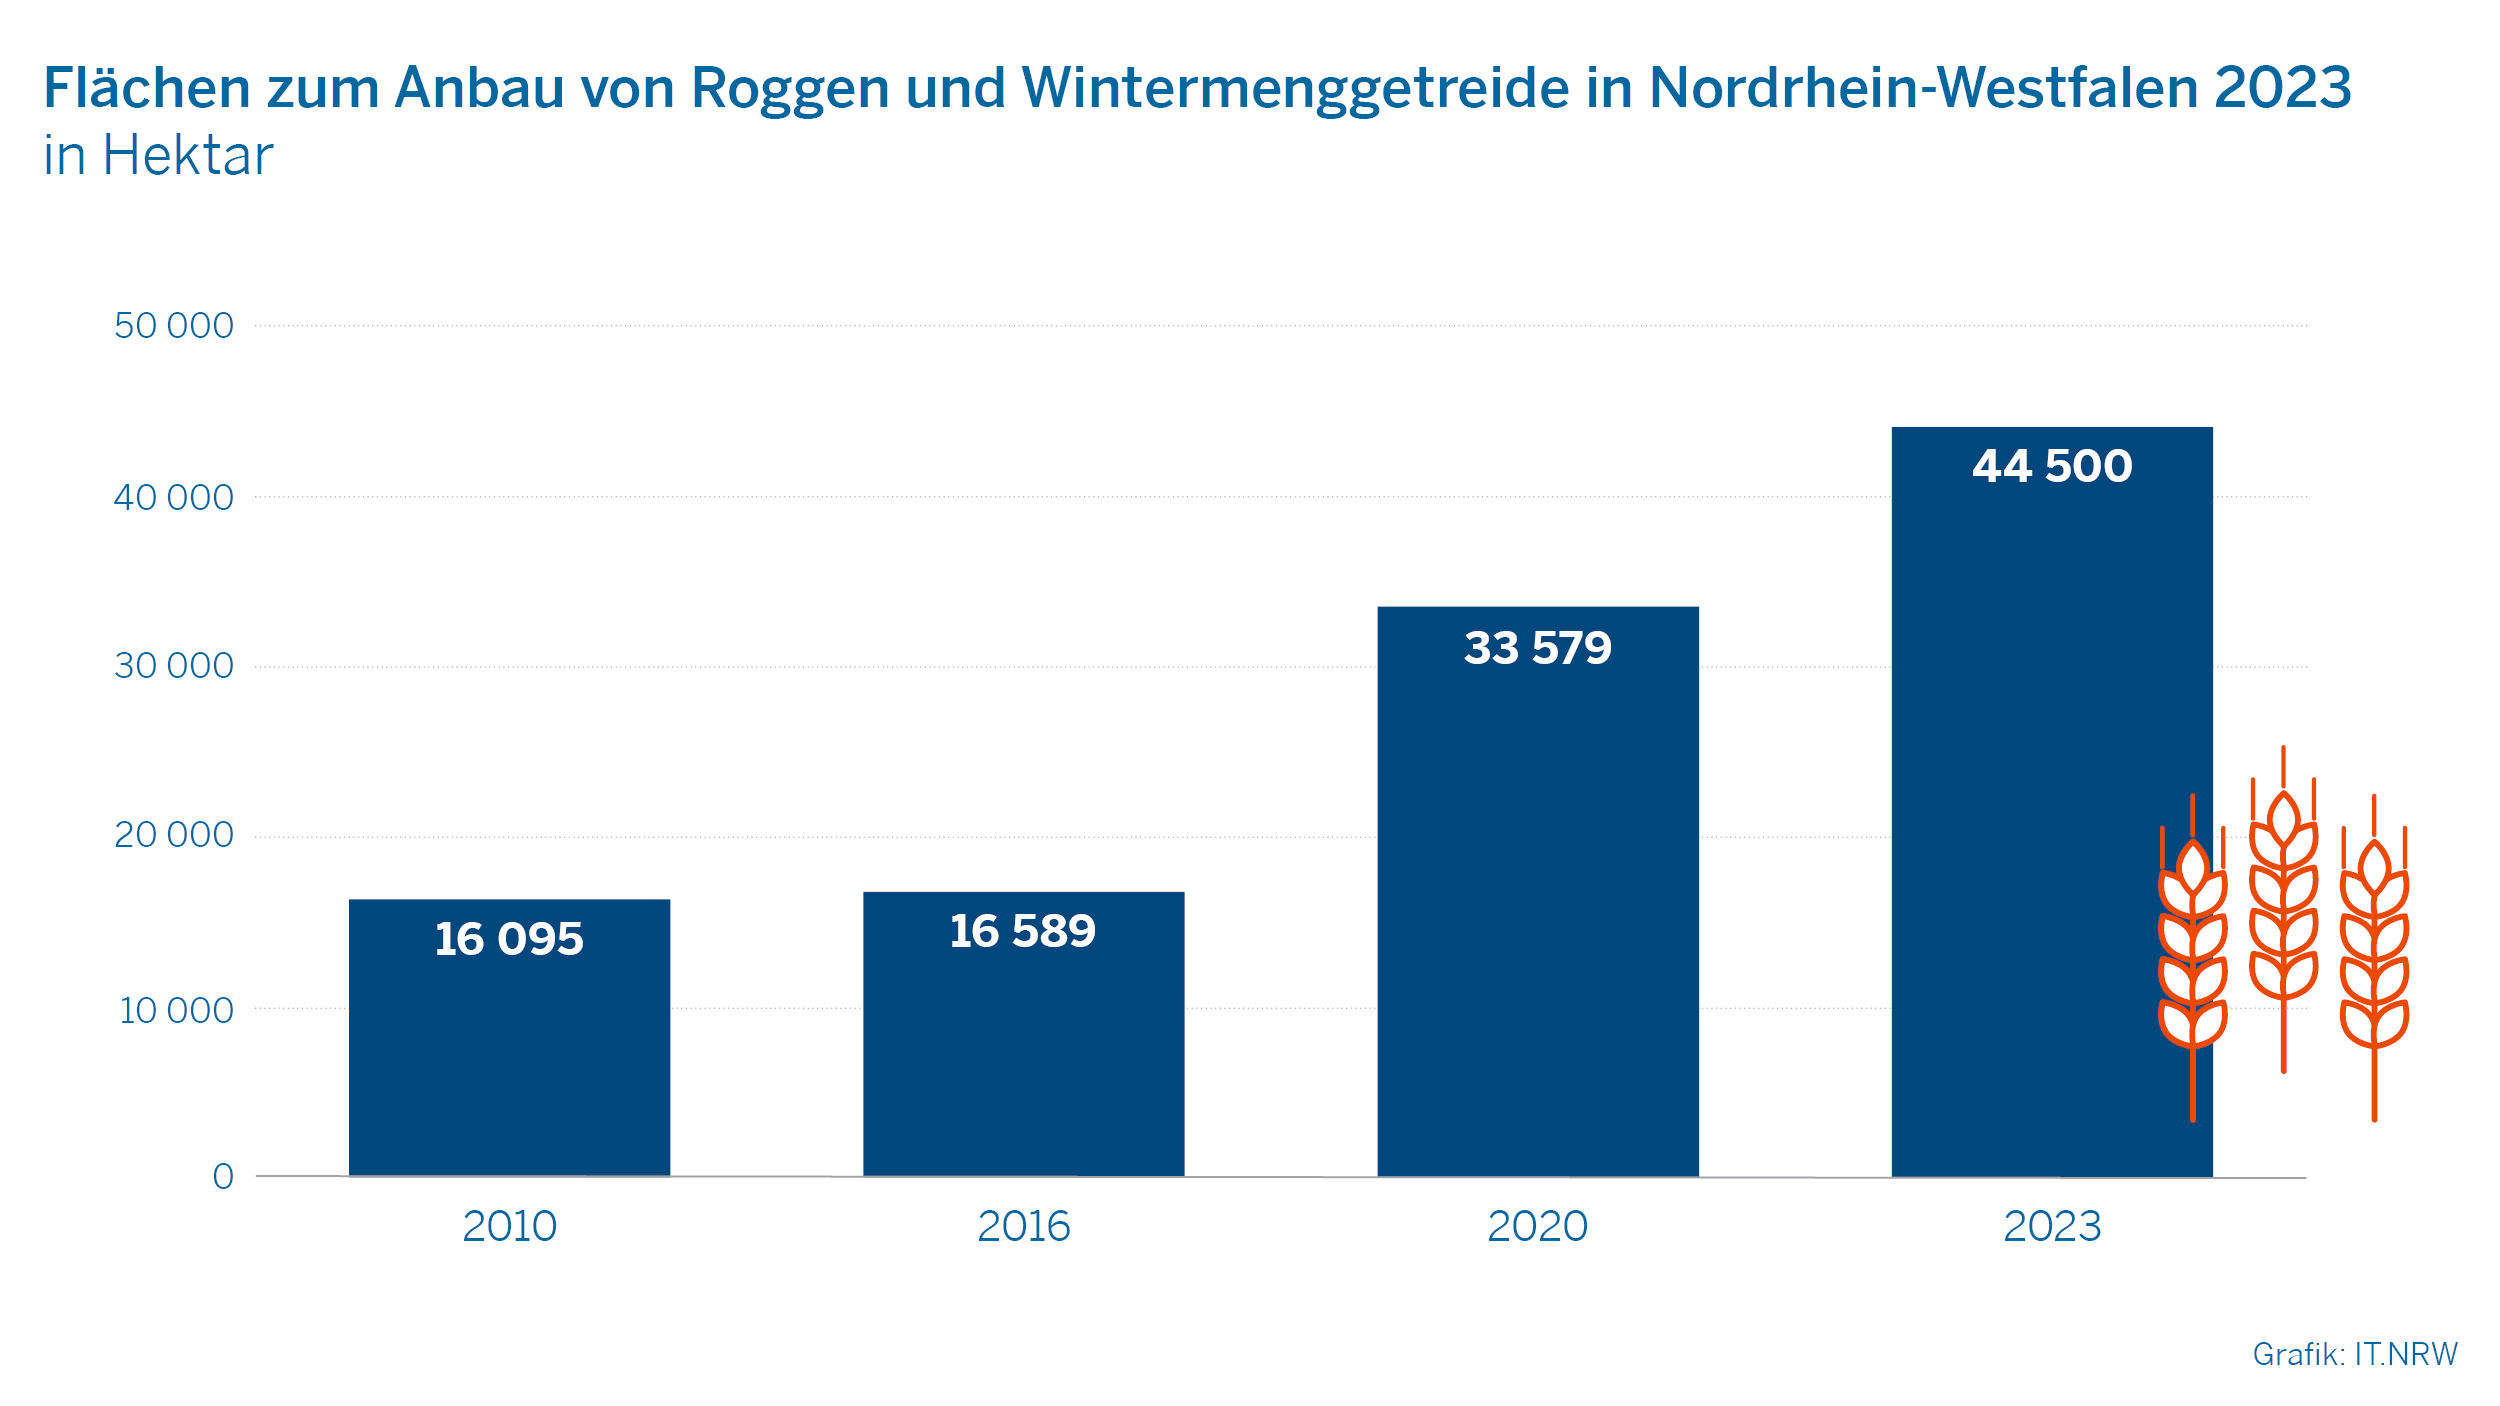 Flächen zum Anbau von Roggen und Wintermenggetreide in Nordrhein-Westfalen 2023